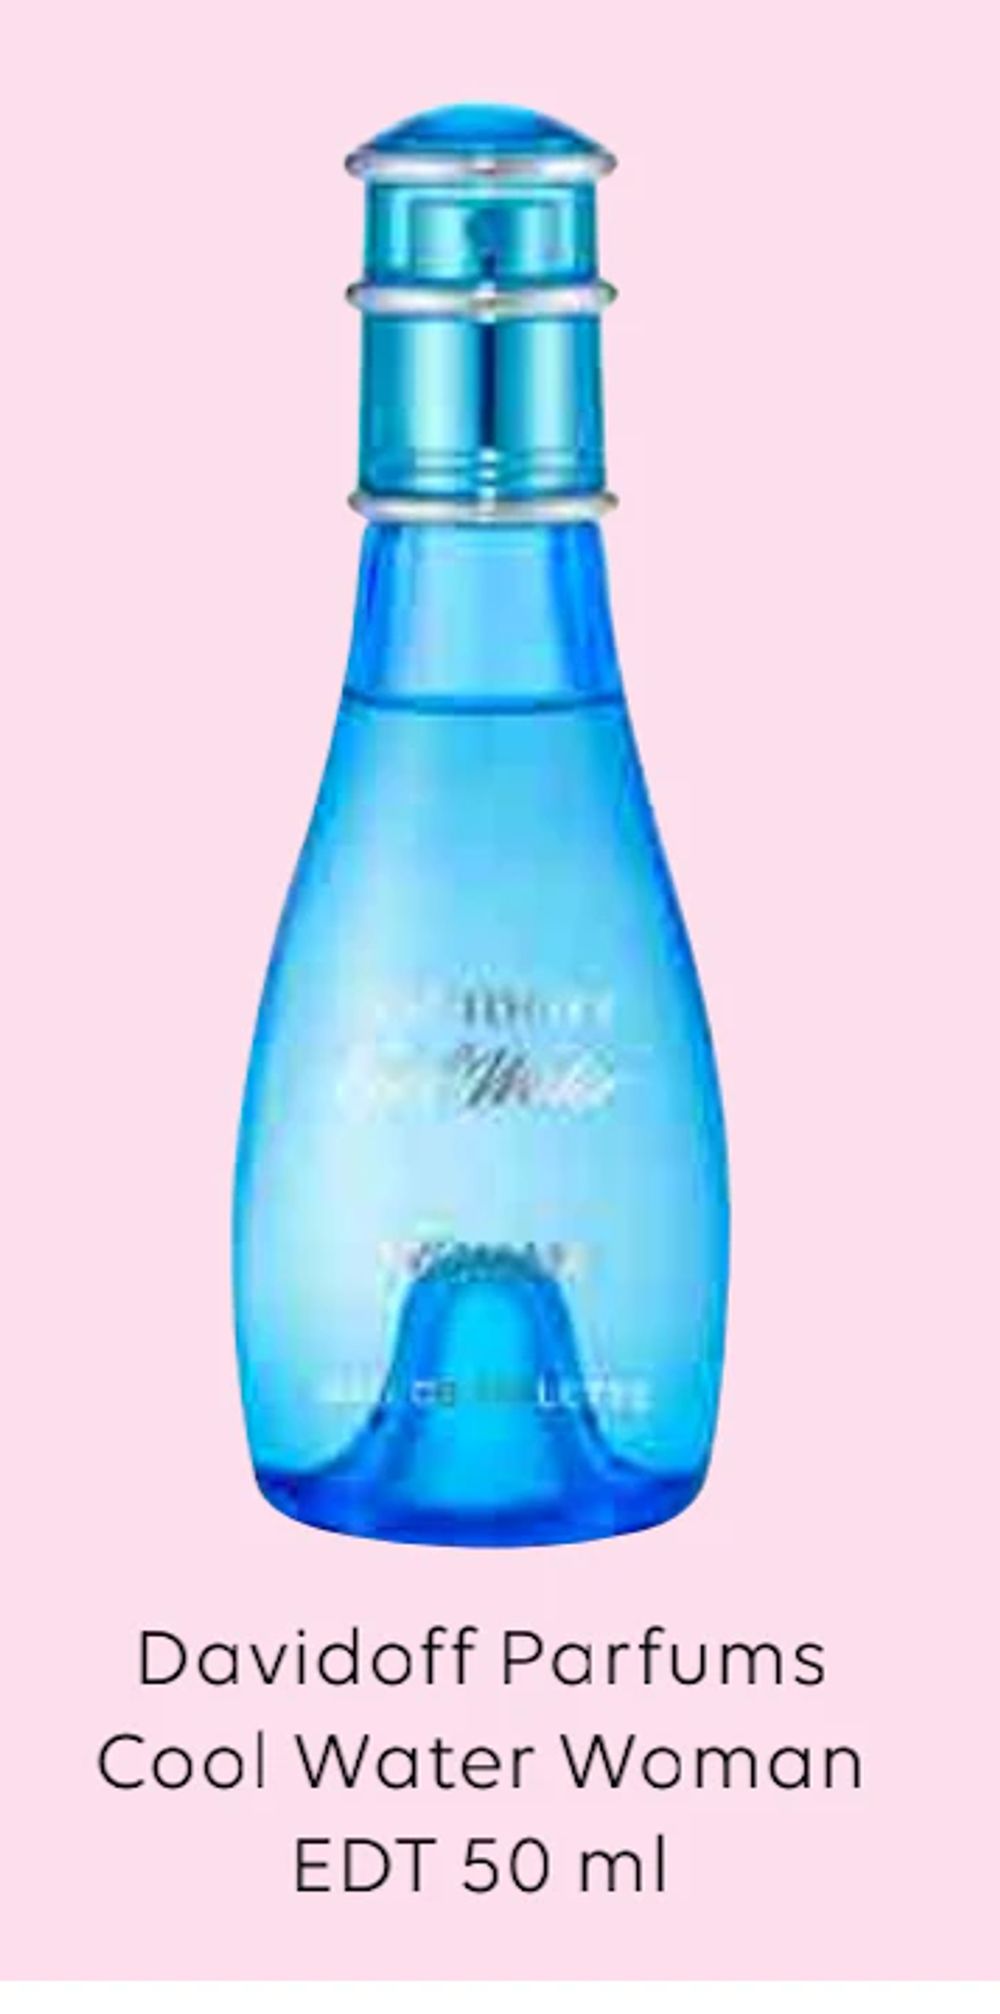 Tilbud på Davidoff Parfums Cool Water Woman fra Scandlines Travel Shop til 249 kr.